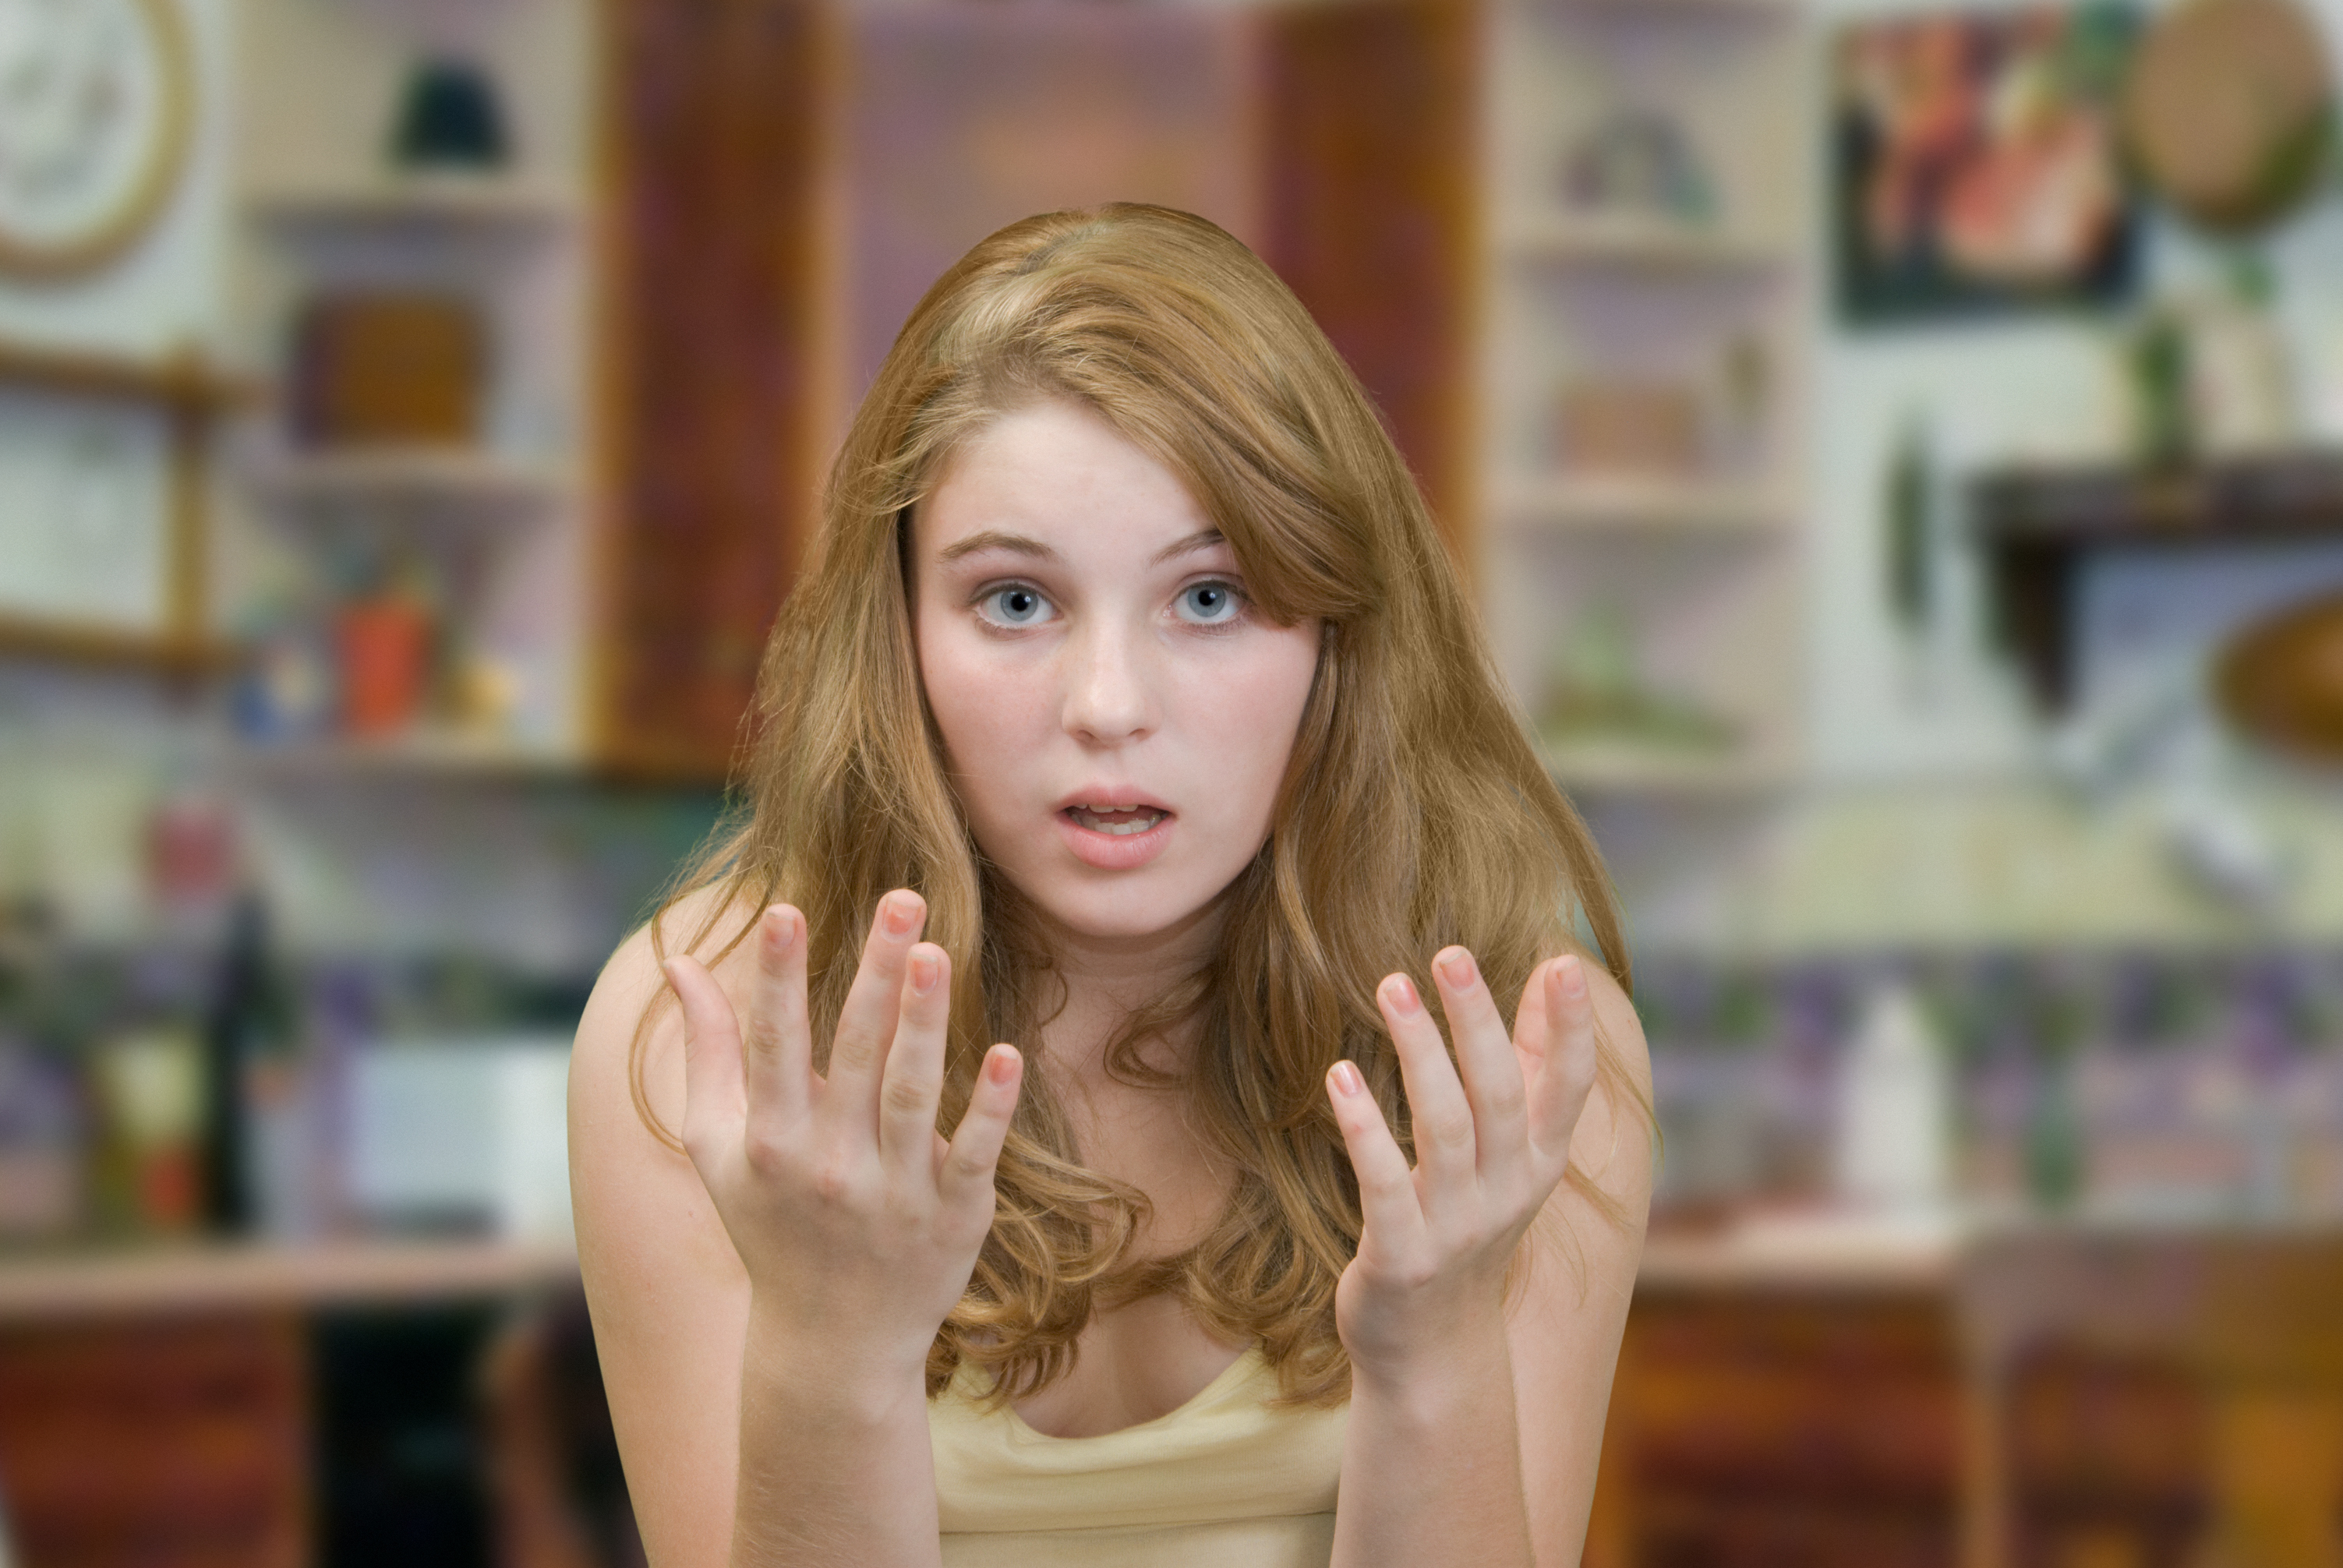 Girl gesturing like she's explaining something | Source: Shutterstock